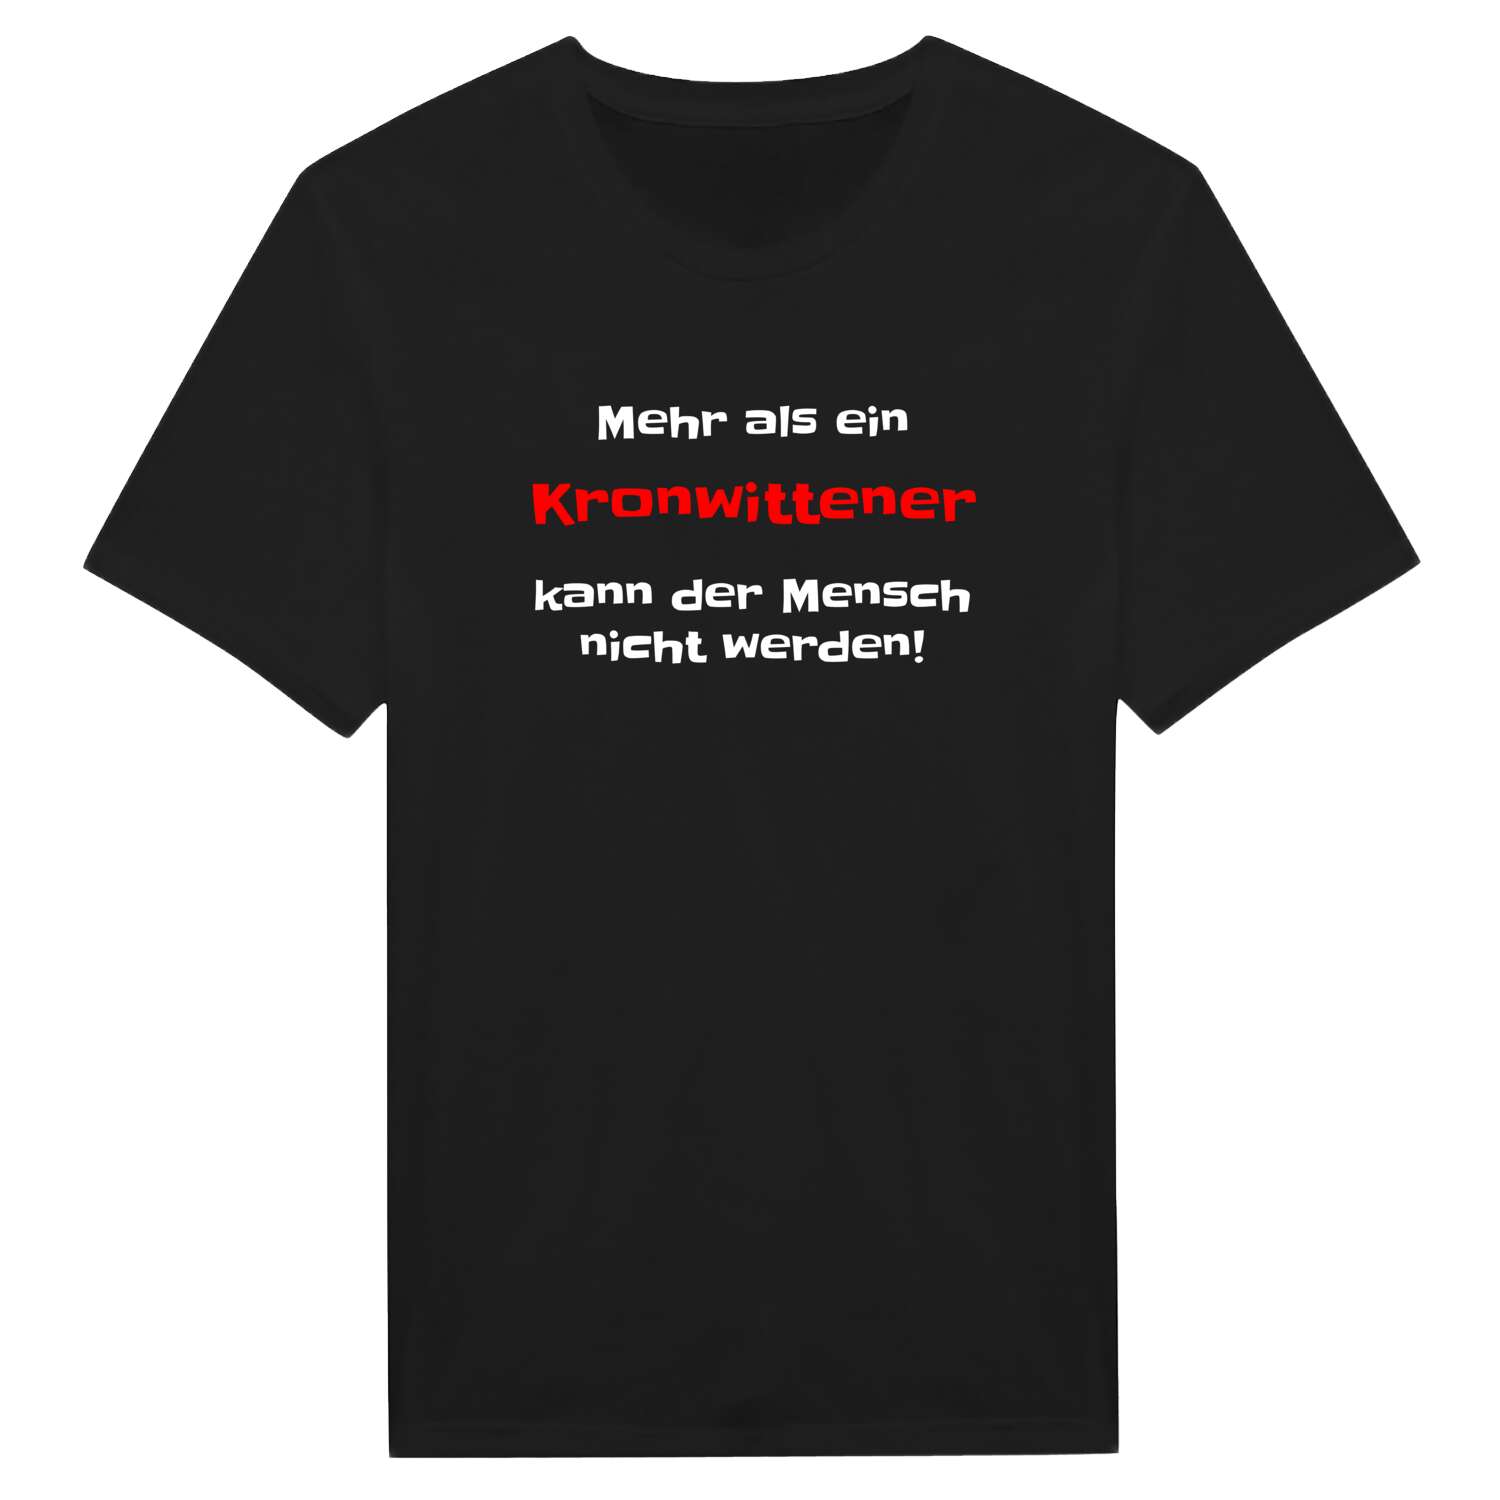 Kronwitten T-Shirt »Mehr als ein«